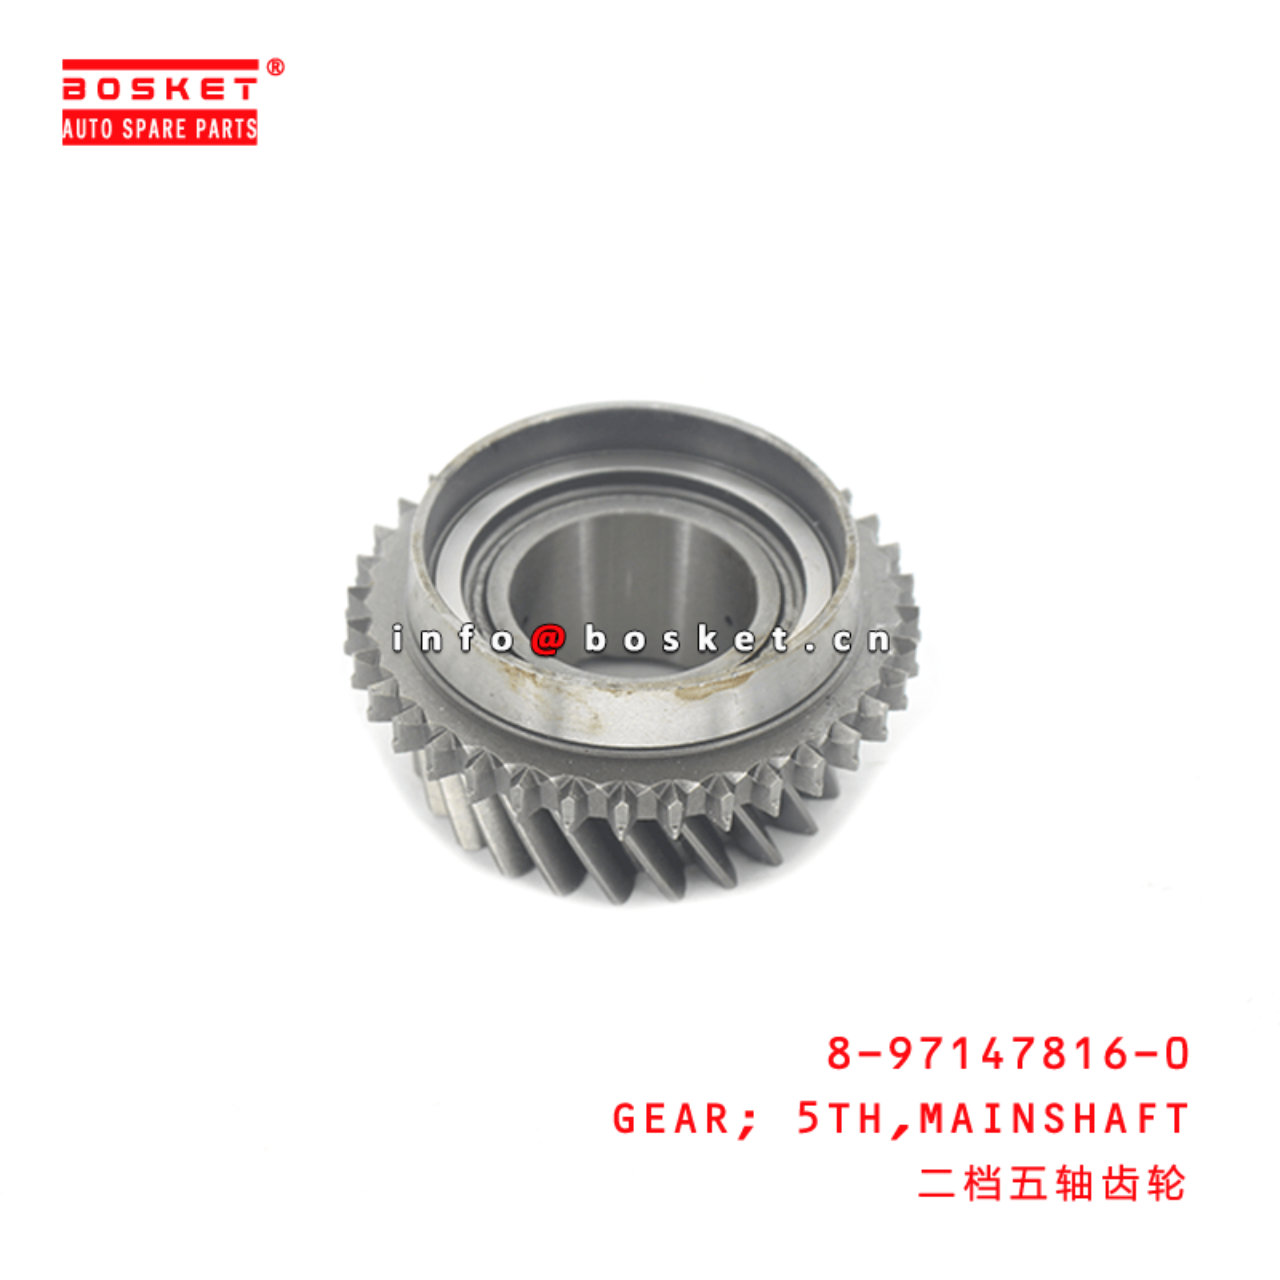 8-97147816-0 Mainshaft Fifth Gear 8971478160 Suitable for ISUZU JMC 4JB1